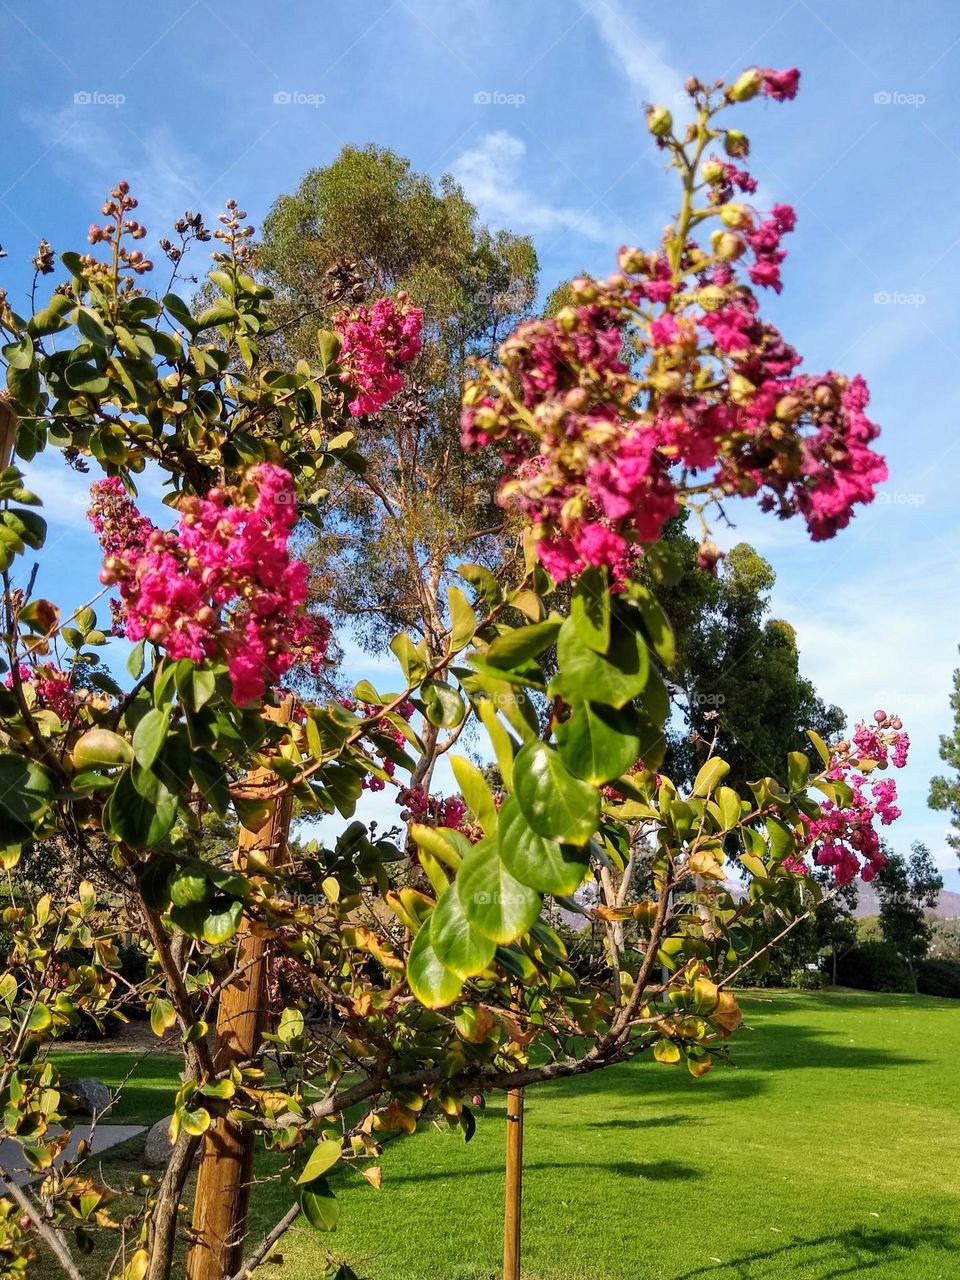 Blooming crepe myrtle at a local neighborhood park in El Cajon, CA.